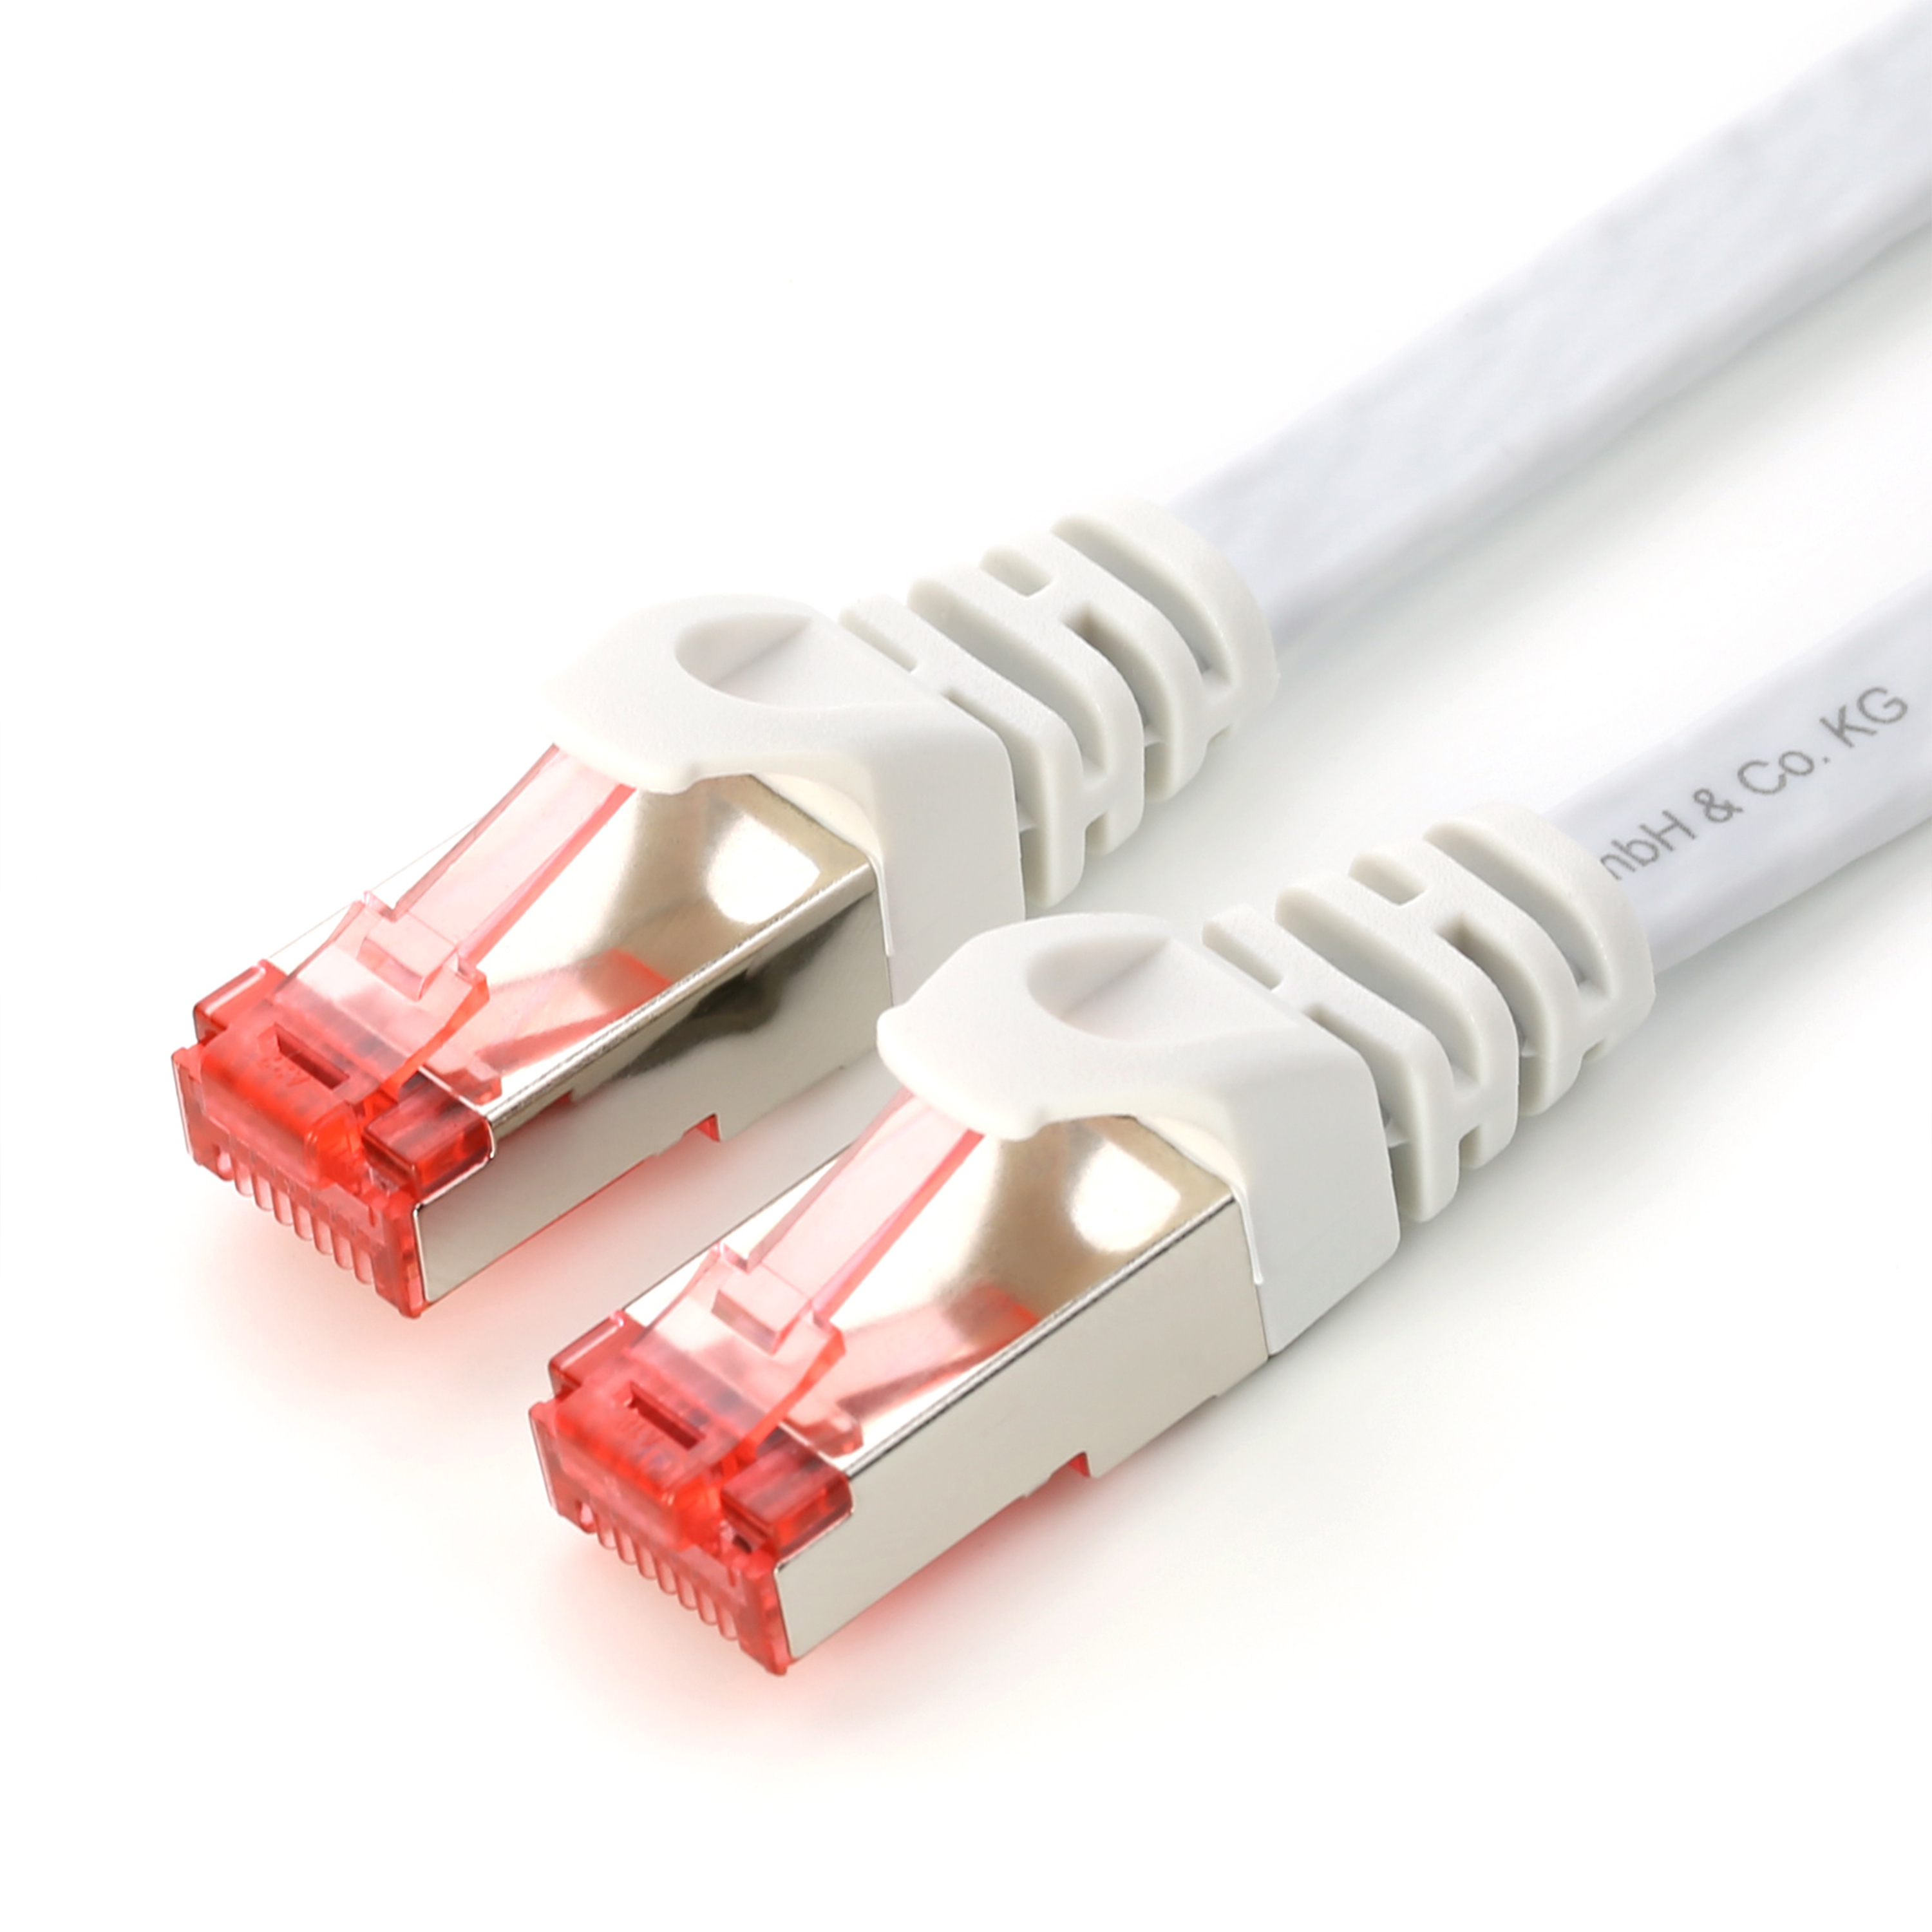 CSL 0,25m Flachband FTP weiß Patchkabel Stecker, Kabel, weiß Cat7 weiß-roter LAN